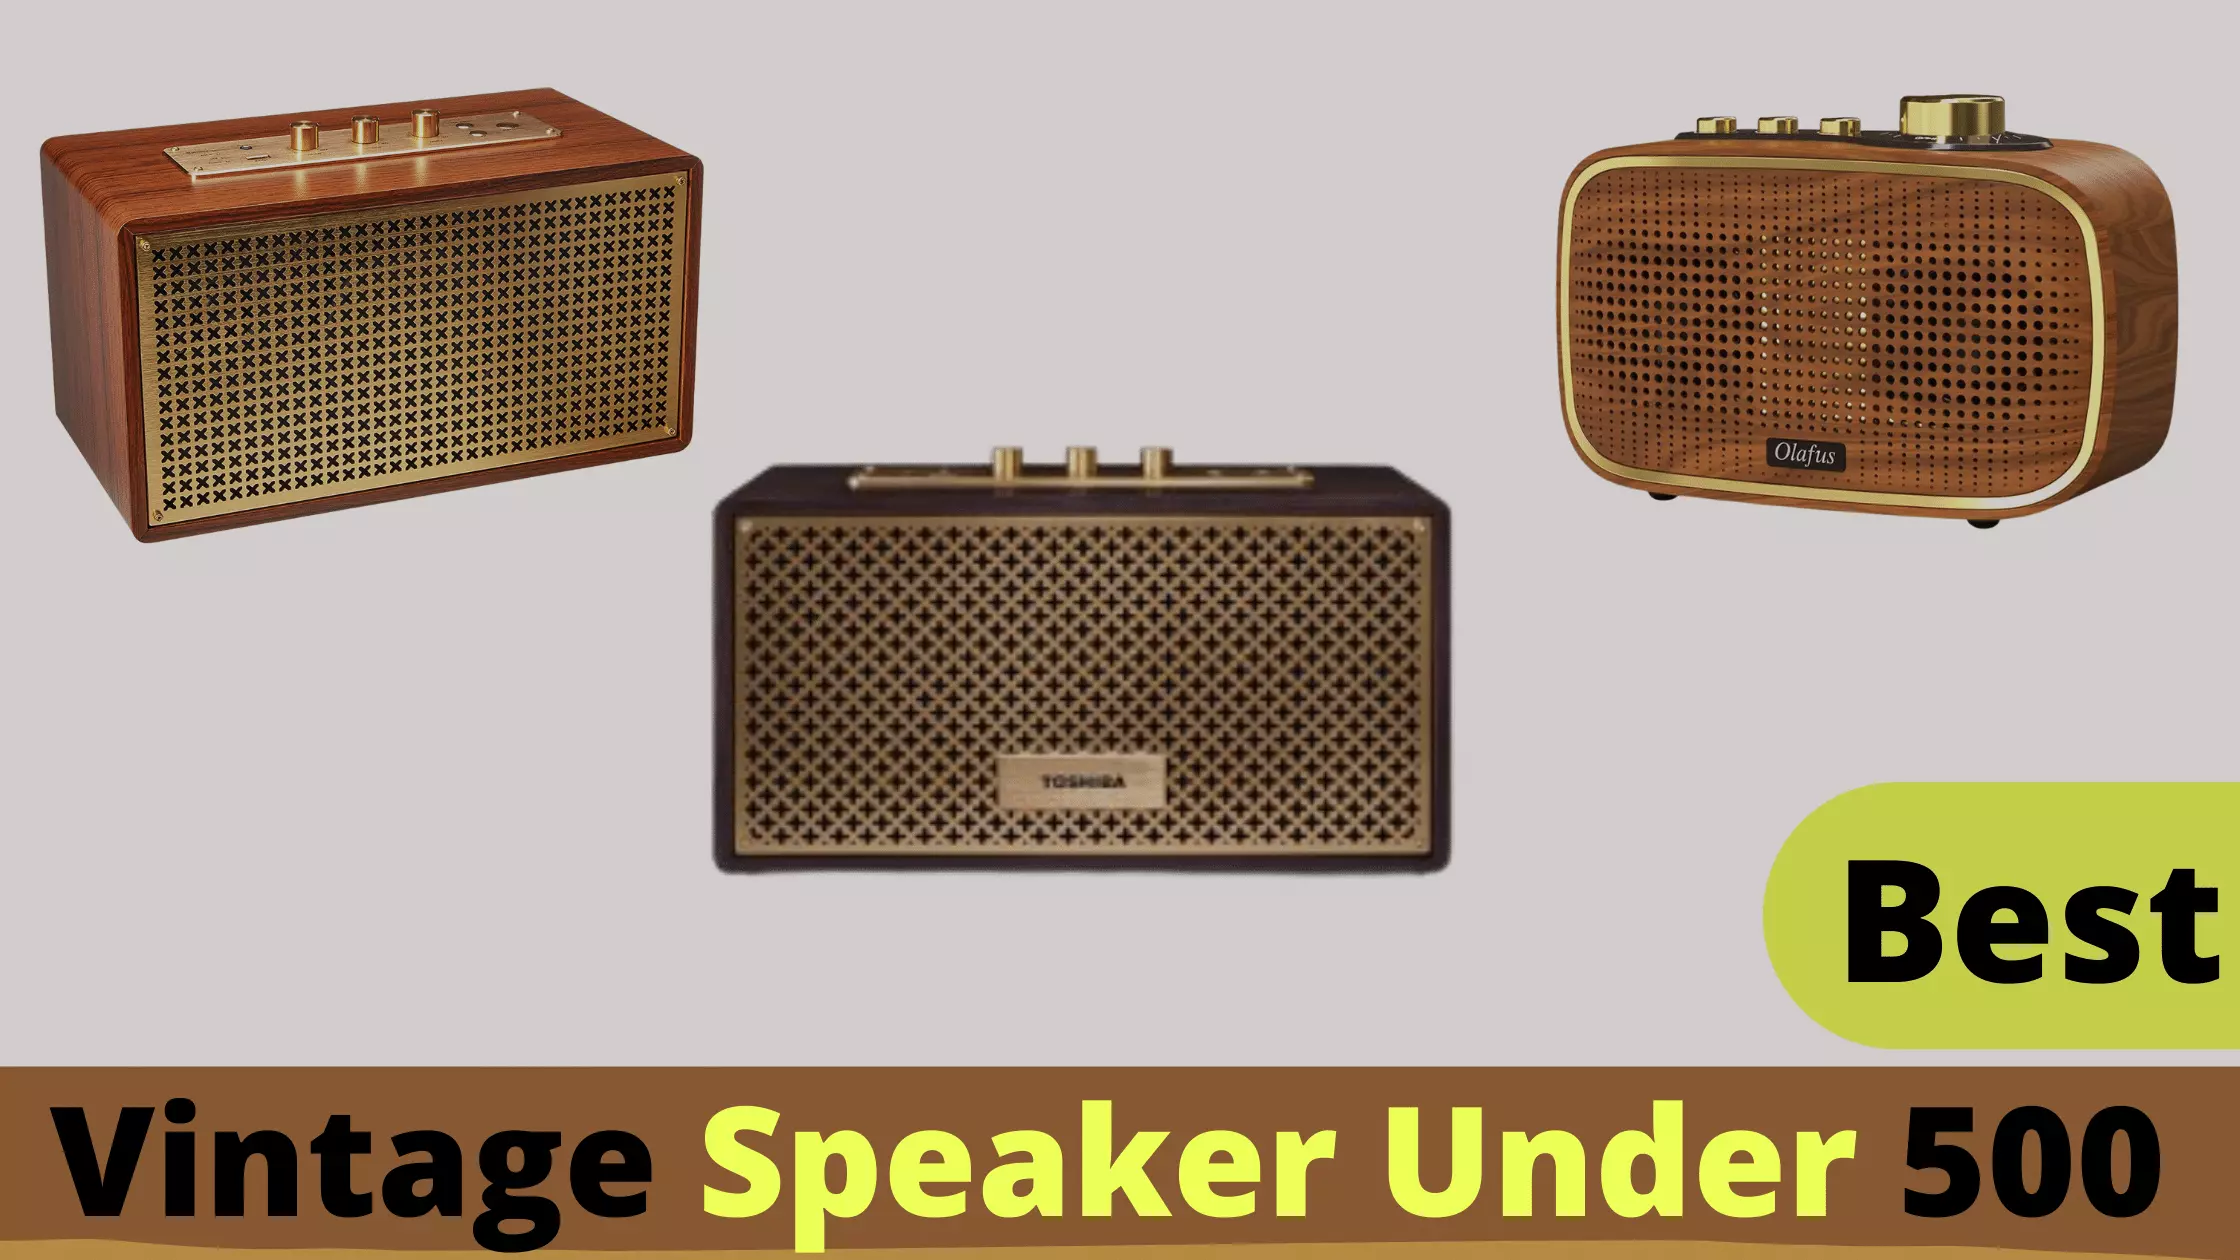 Top 10 Best Vintage Speakers Under 500 Reviews